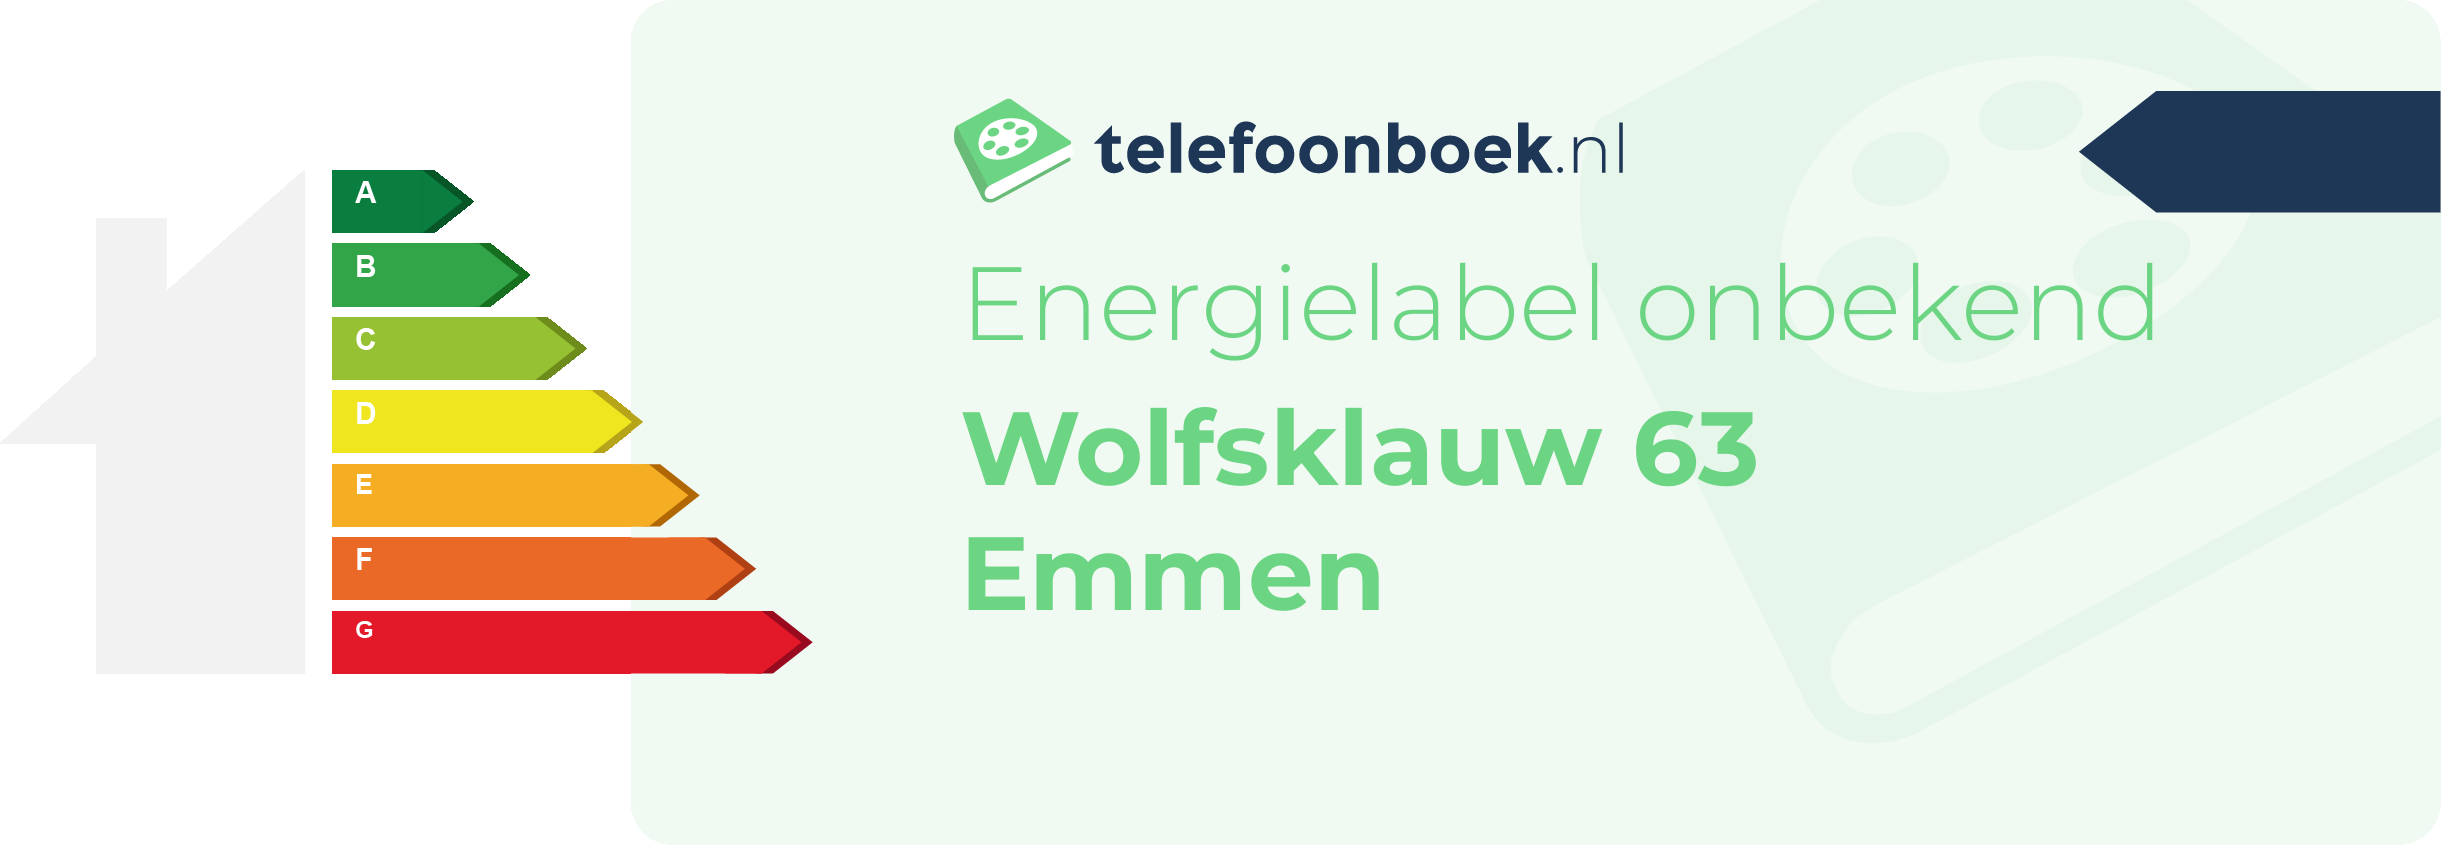 Energielabel Wolfsklauw 63 Emmen